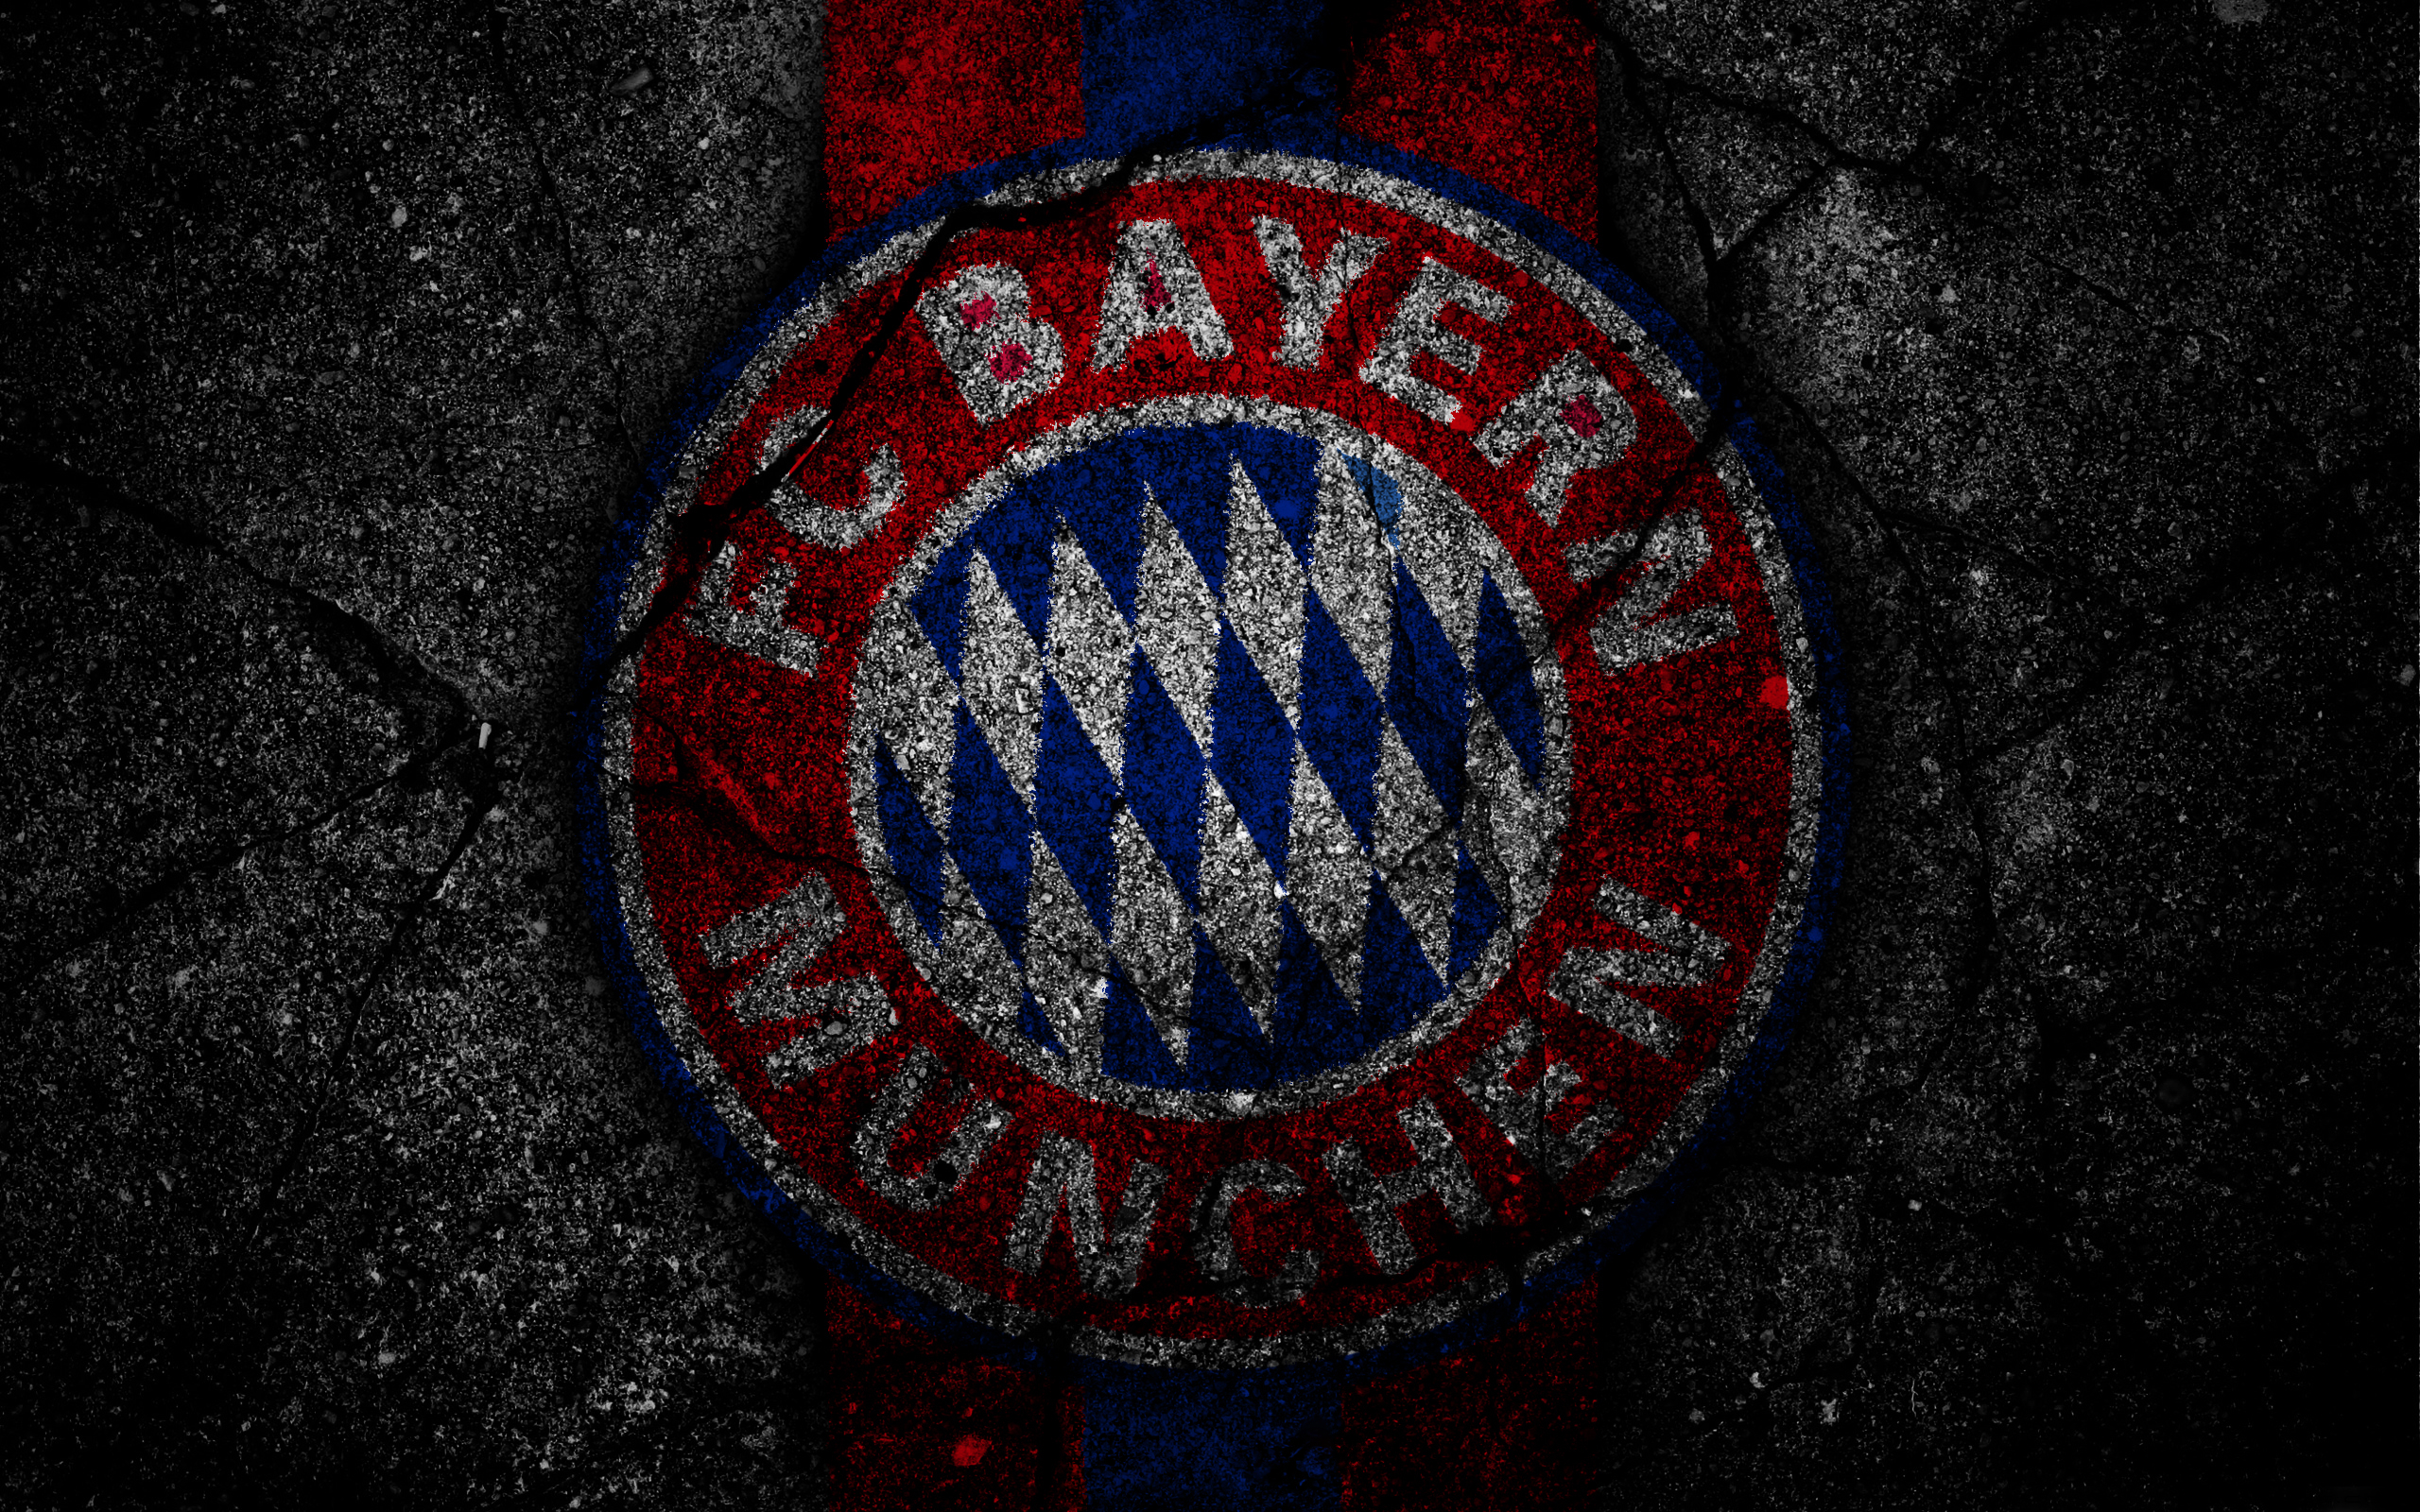 Dream League Soccer Bayern Munich 381304 Hd Wallpaper